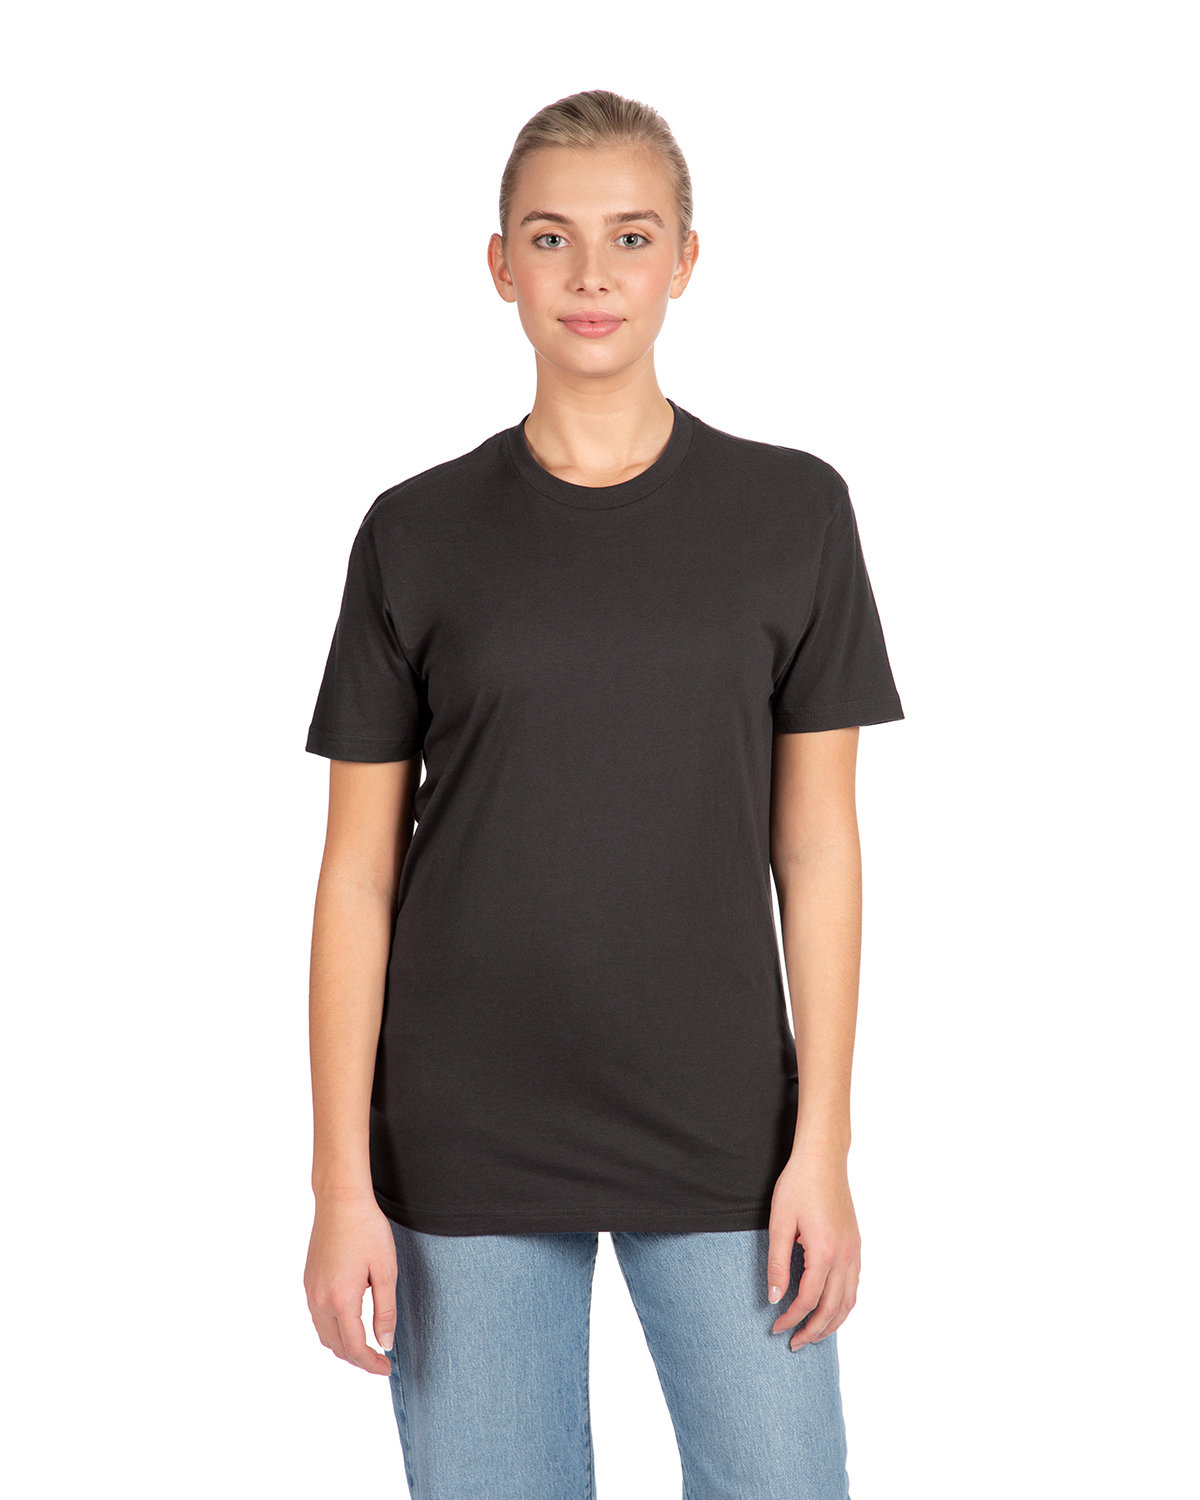 Next Level Unisex Cotton T-Shirt GRAPHITE BLACK 